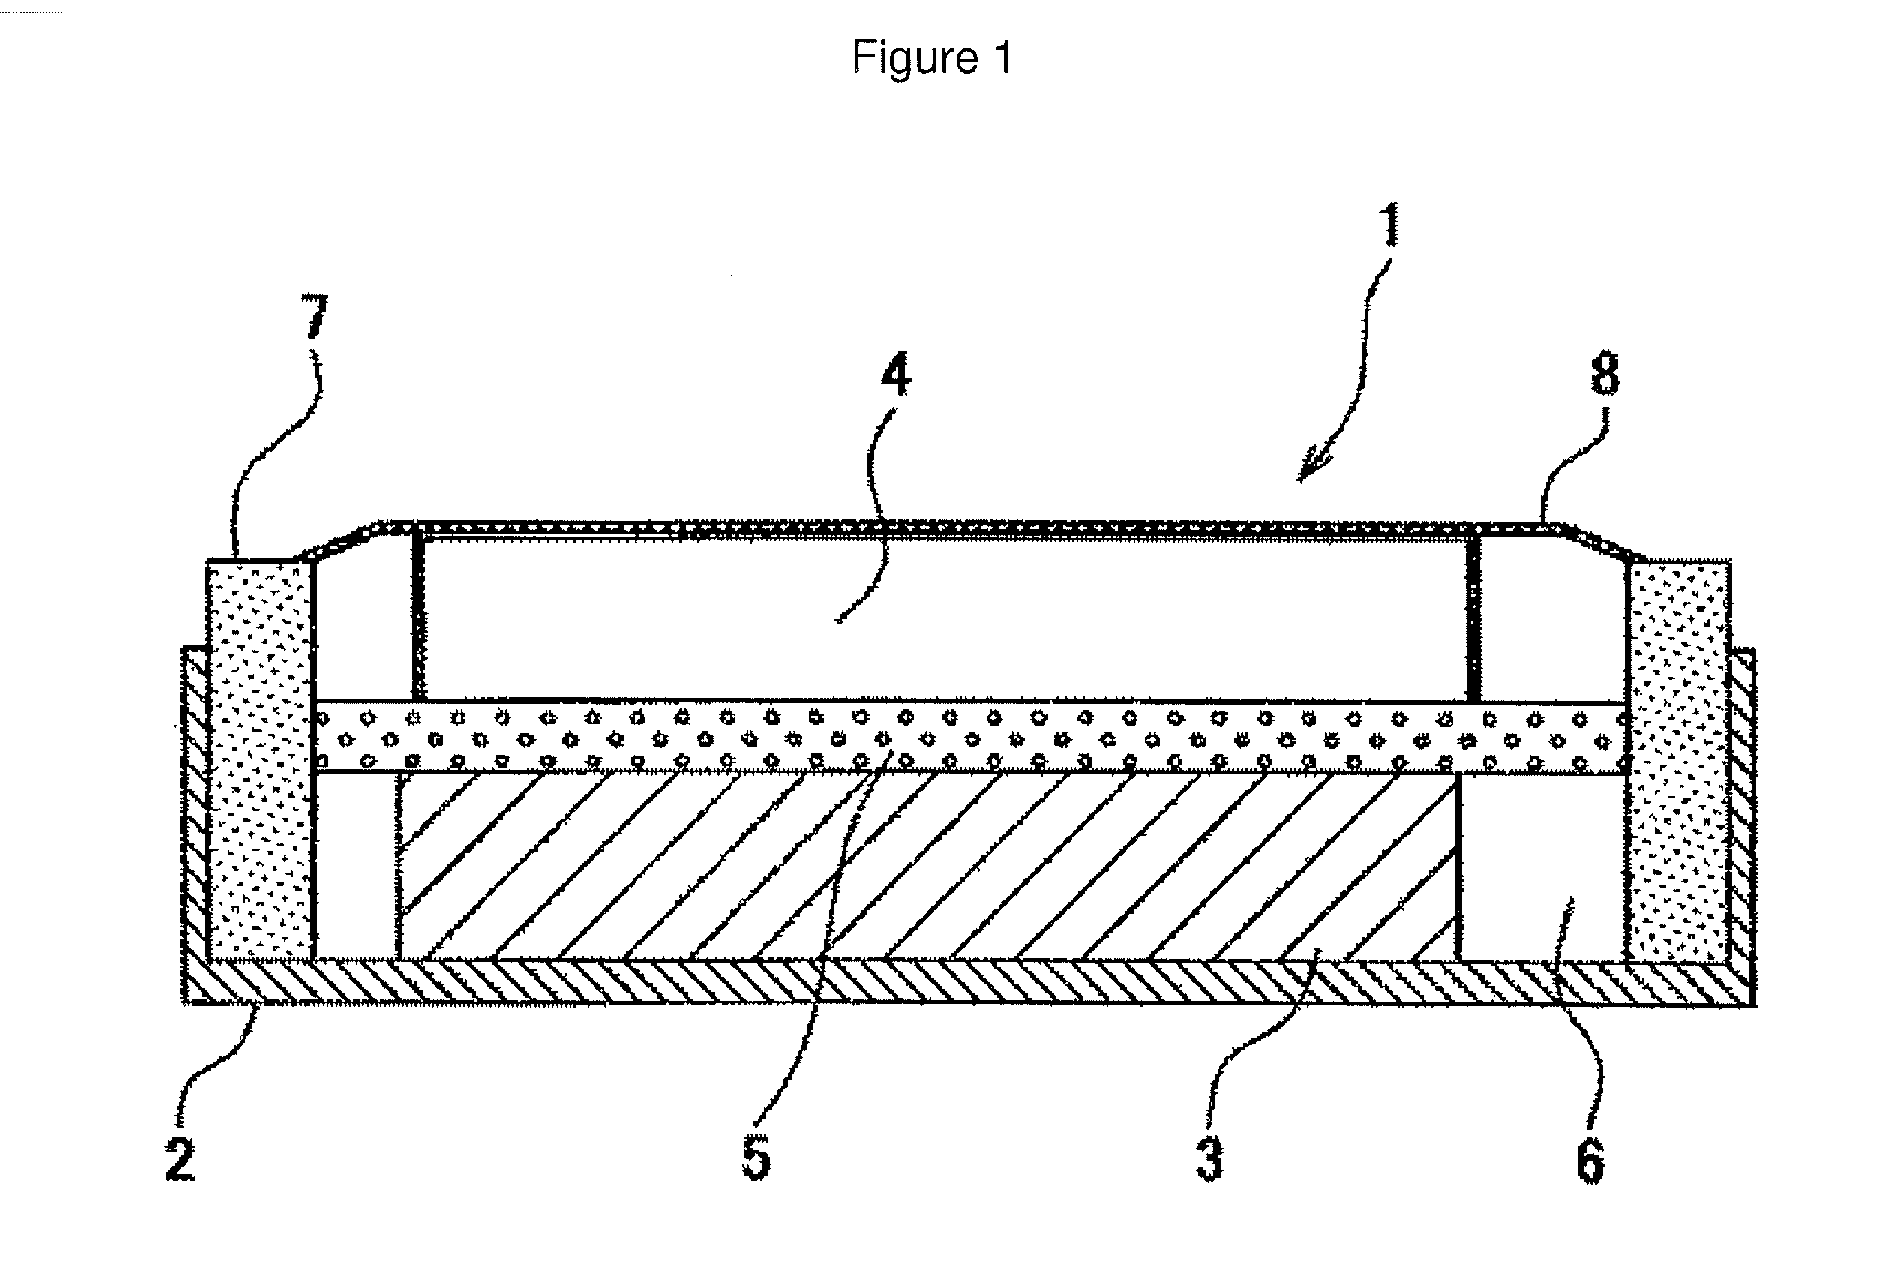 Battery separator comprising a polyolefin nanofilament porous sheet